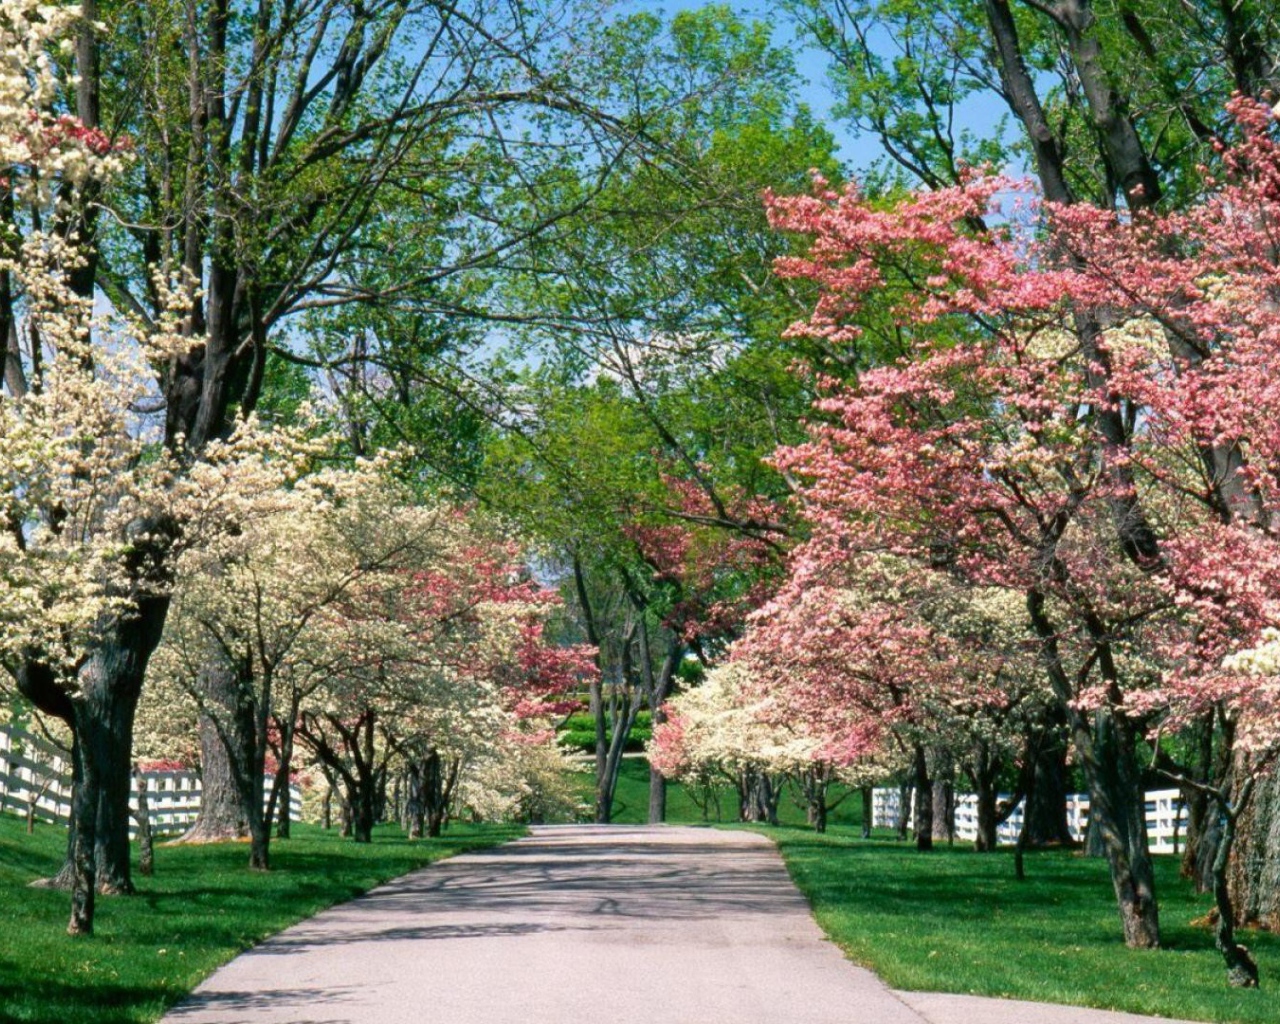 Аллея для прогулок в цветущем парке